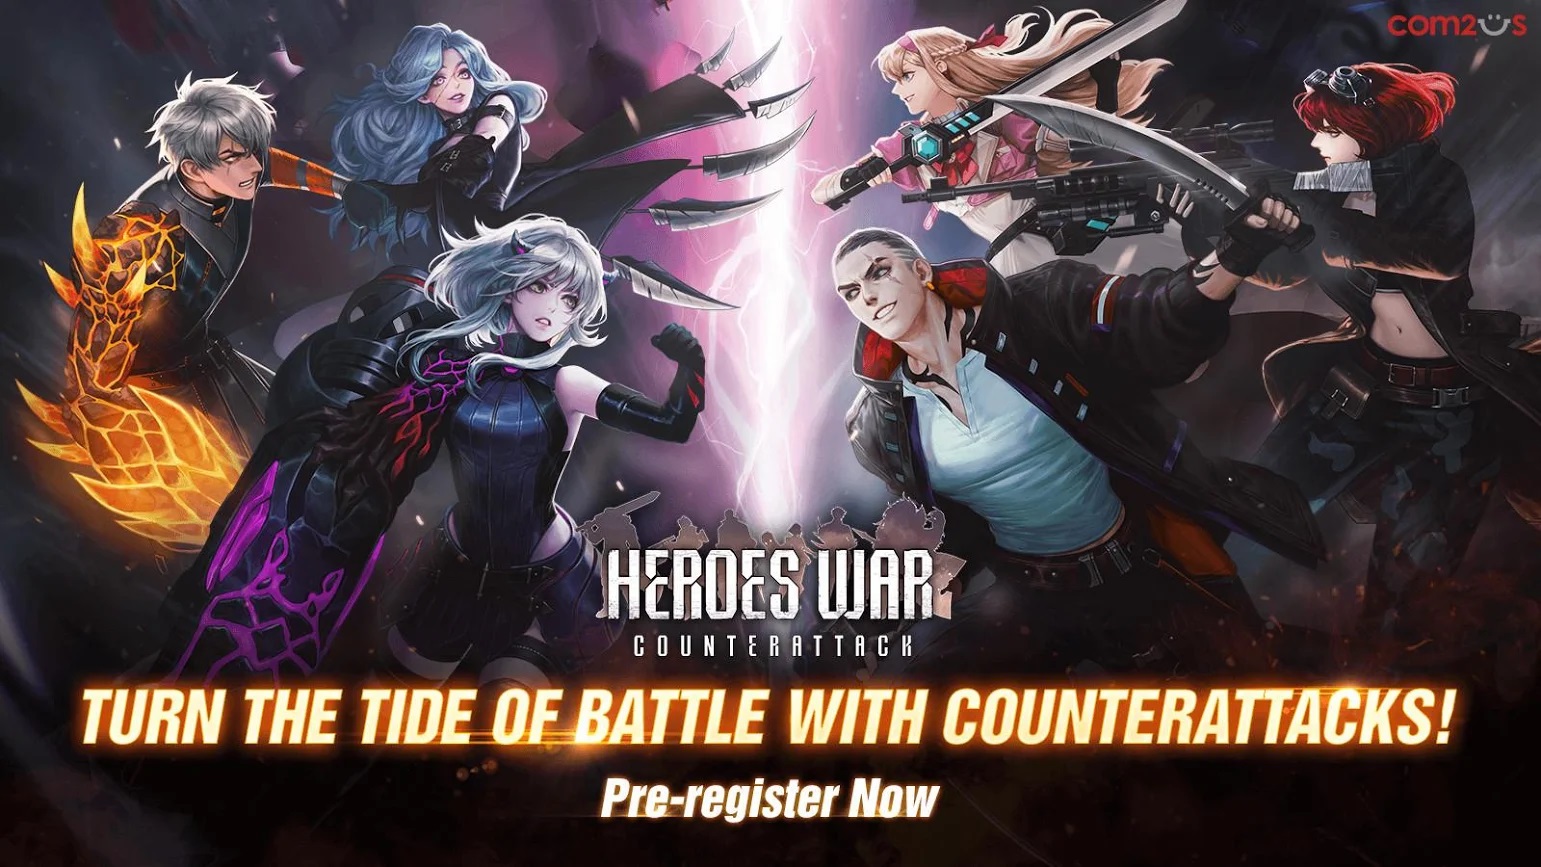 ‘Summoners War’ Developer Com2uS is Releasing ‘Heroes War: Counterattack’ Soon. Pre-Registrations Open